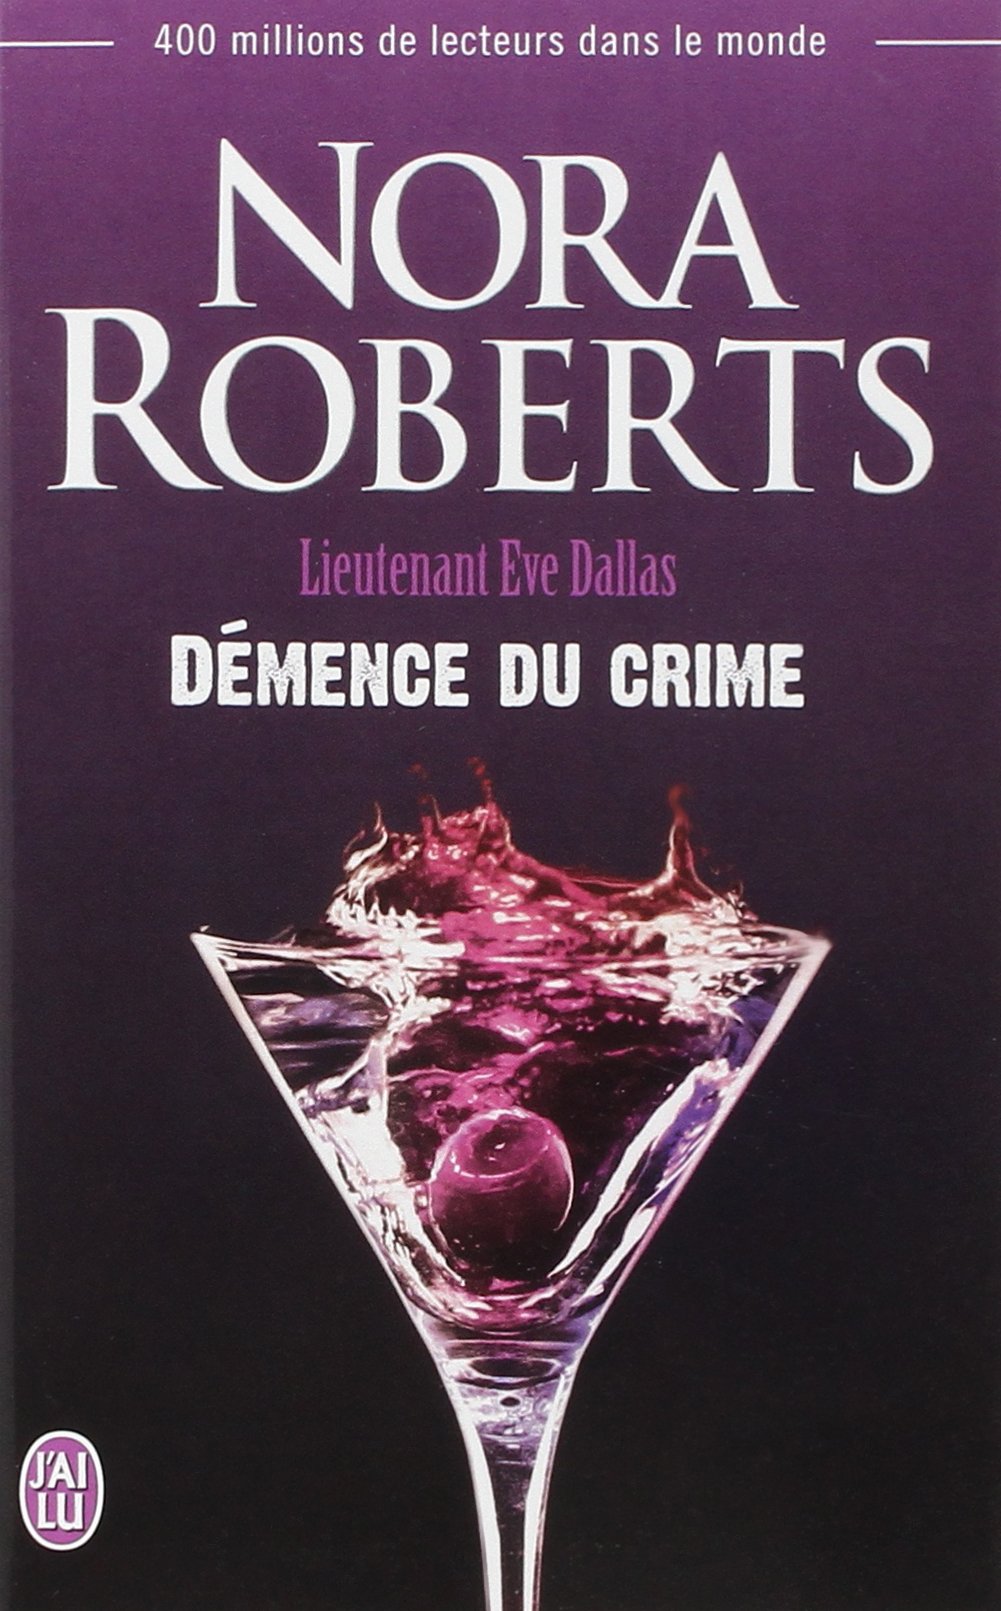 Livre ISBN 2290074284 Lieutenant Ève Dallas # 35 : Démence du crime (Nora Roberts)